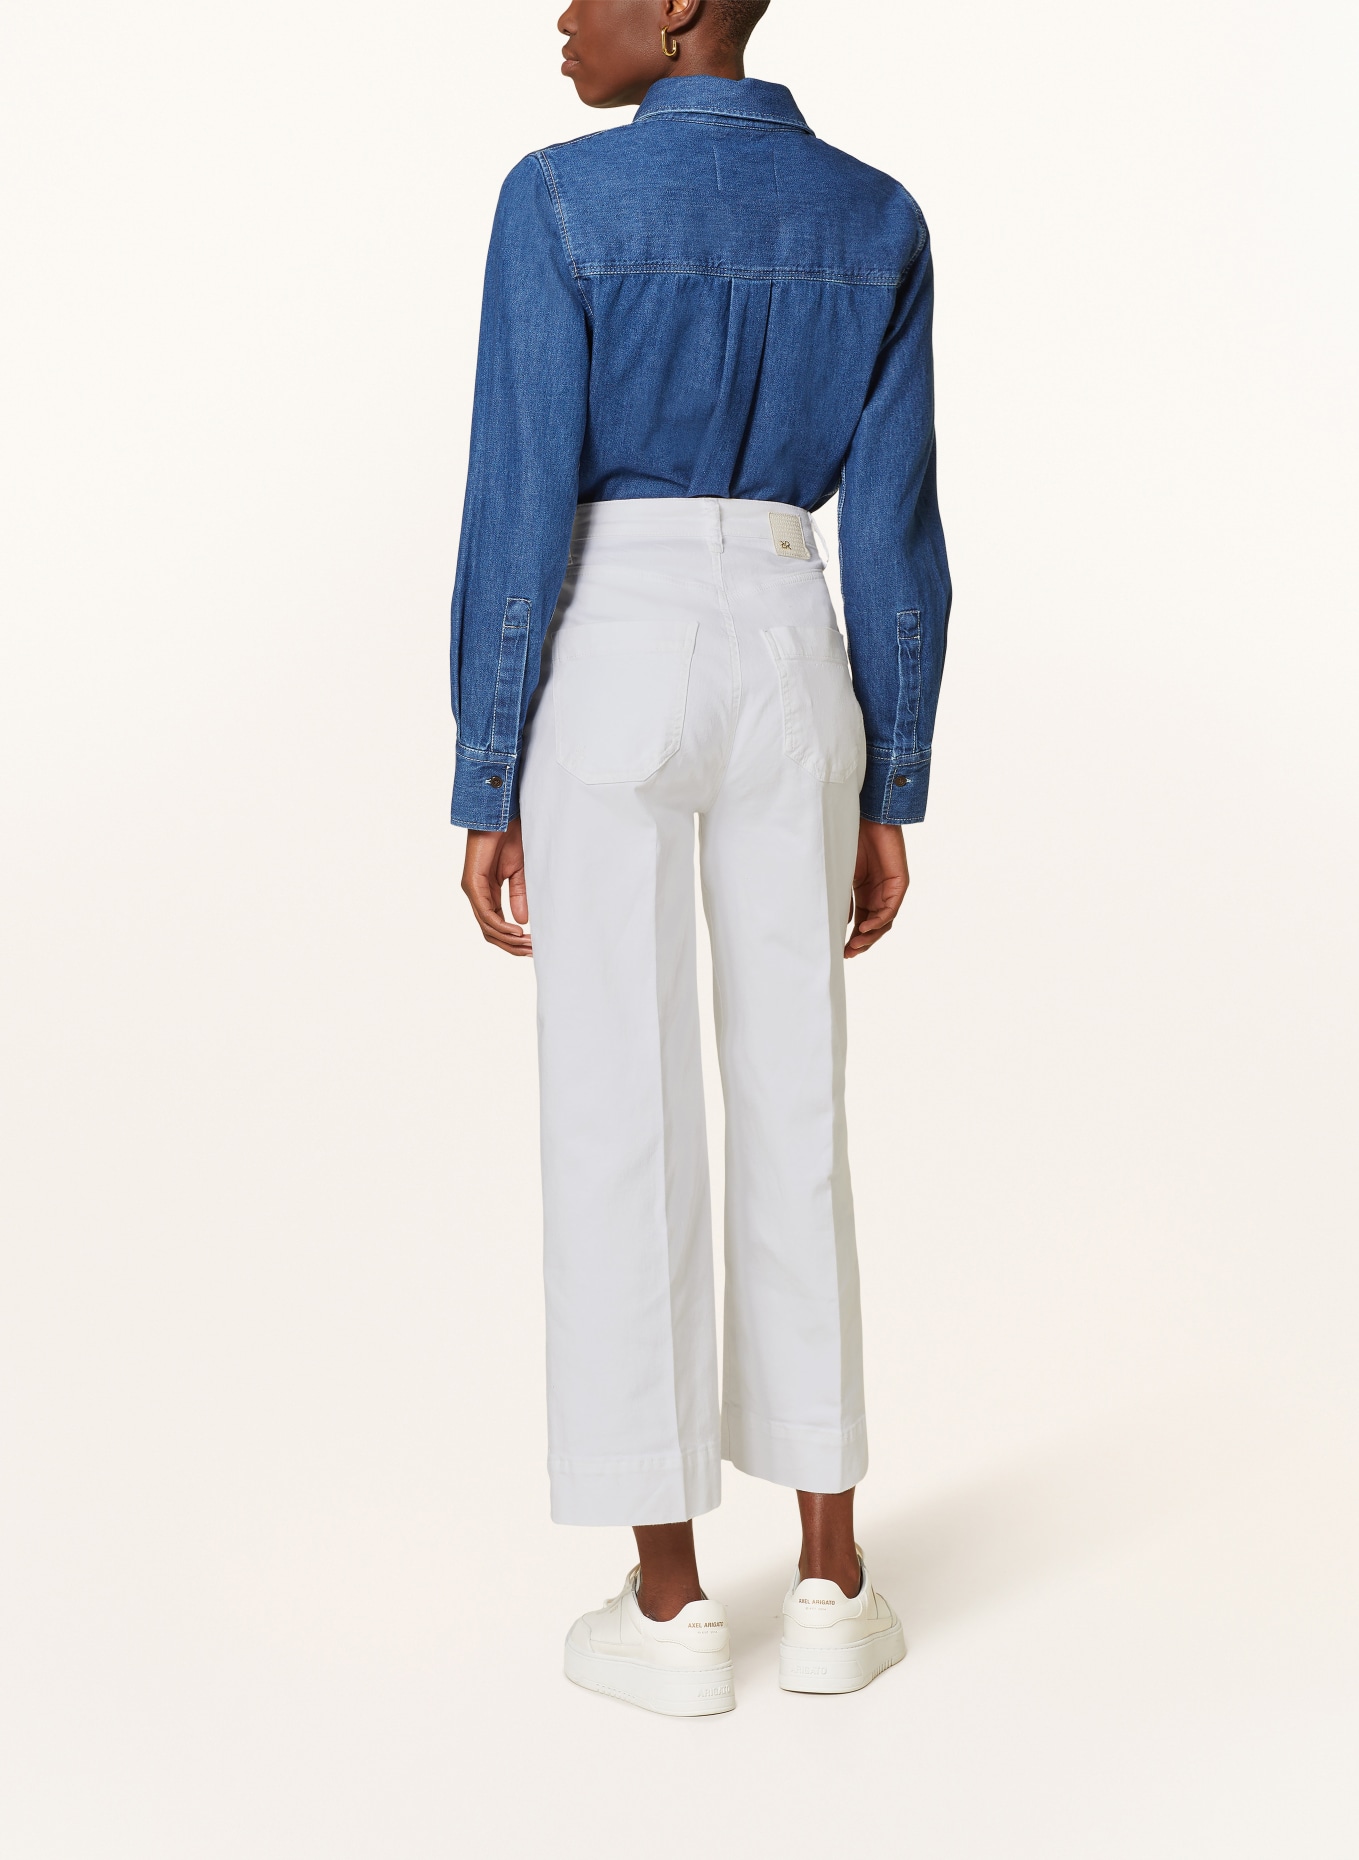 RAFFAELLO ROSSI Culotte jeans MIRU, Color: 120 Natur (Image 3)